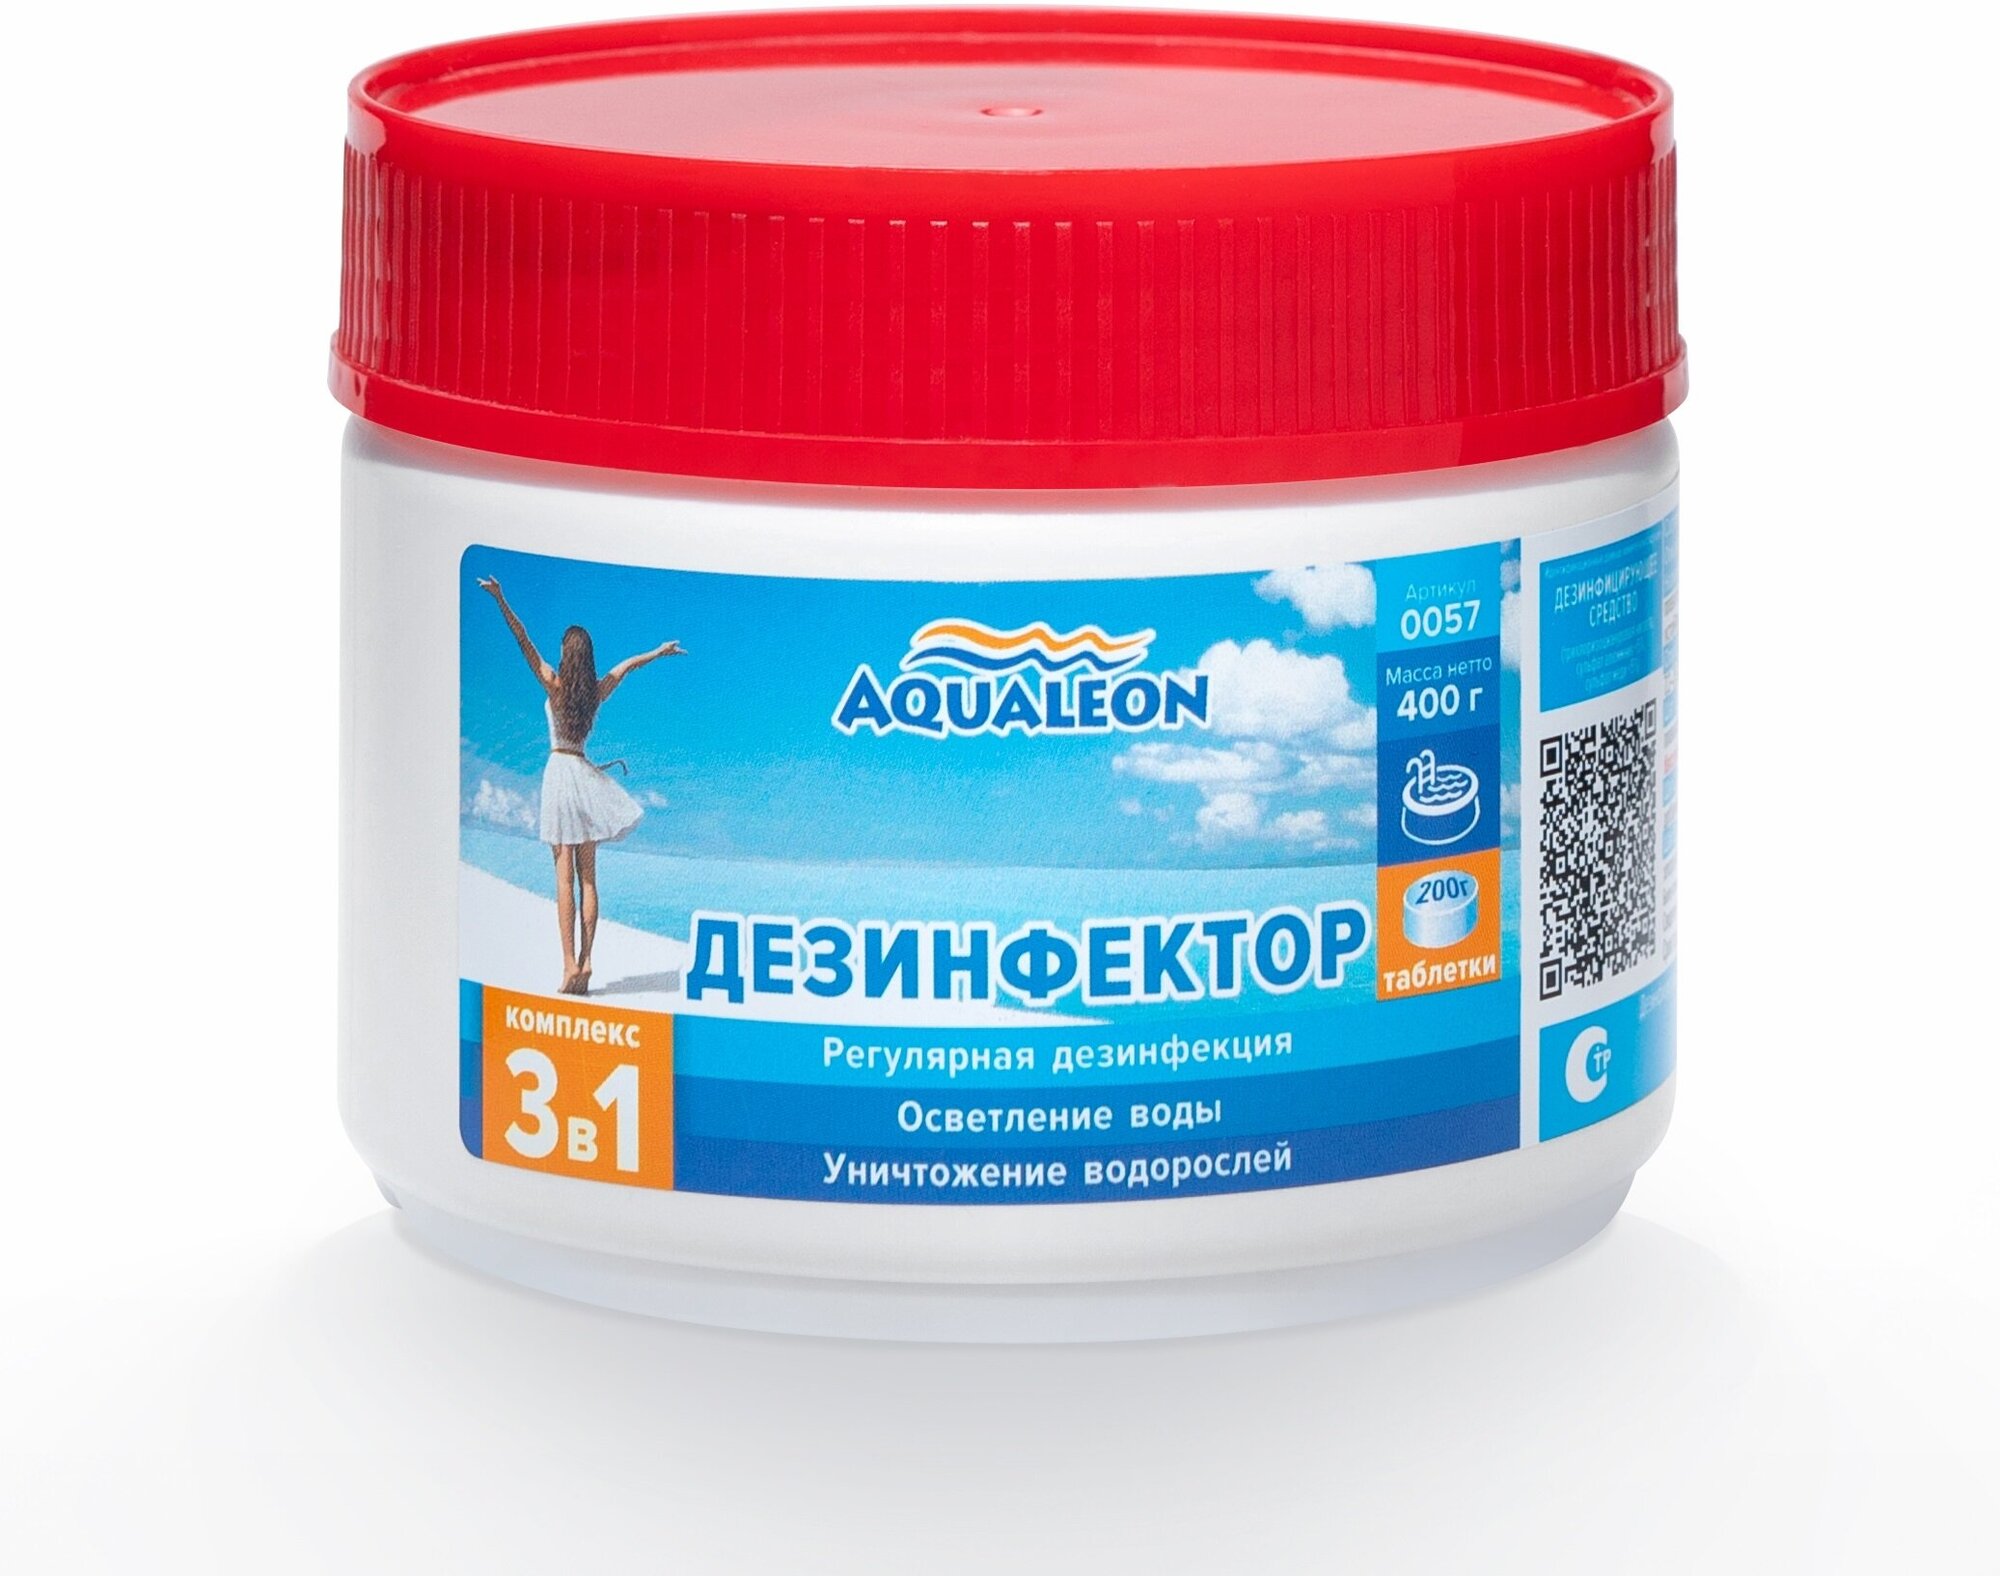 Дезинфектор Aqualeon медленный хлор 3 в 1 в таблетках по 200 гр., 0,4 кг